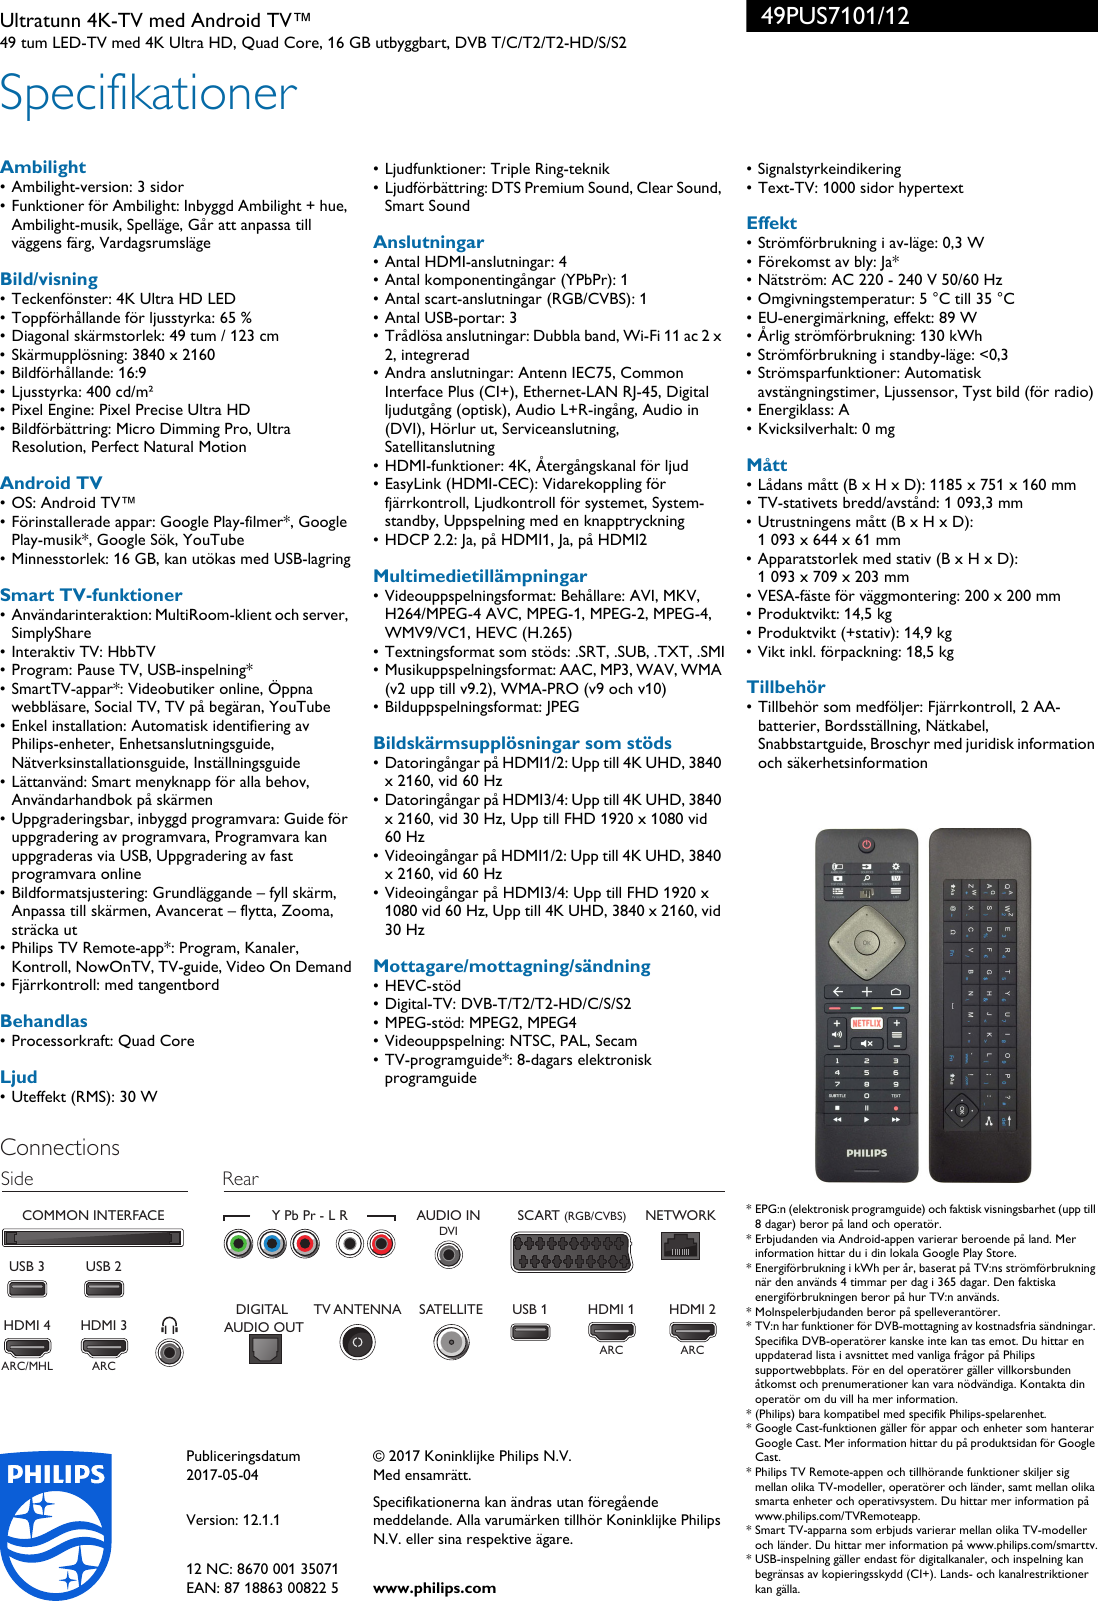 Page 3 of 3 - Philips 49PUS7101/12 Ultratunn TV Med 4K, Android TV™, Tresidig Ambilight Och Pixel Precise Ultra HD TVâ¢ ... 49pus7101 12 Pss Swese